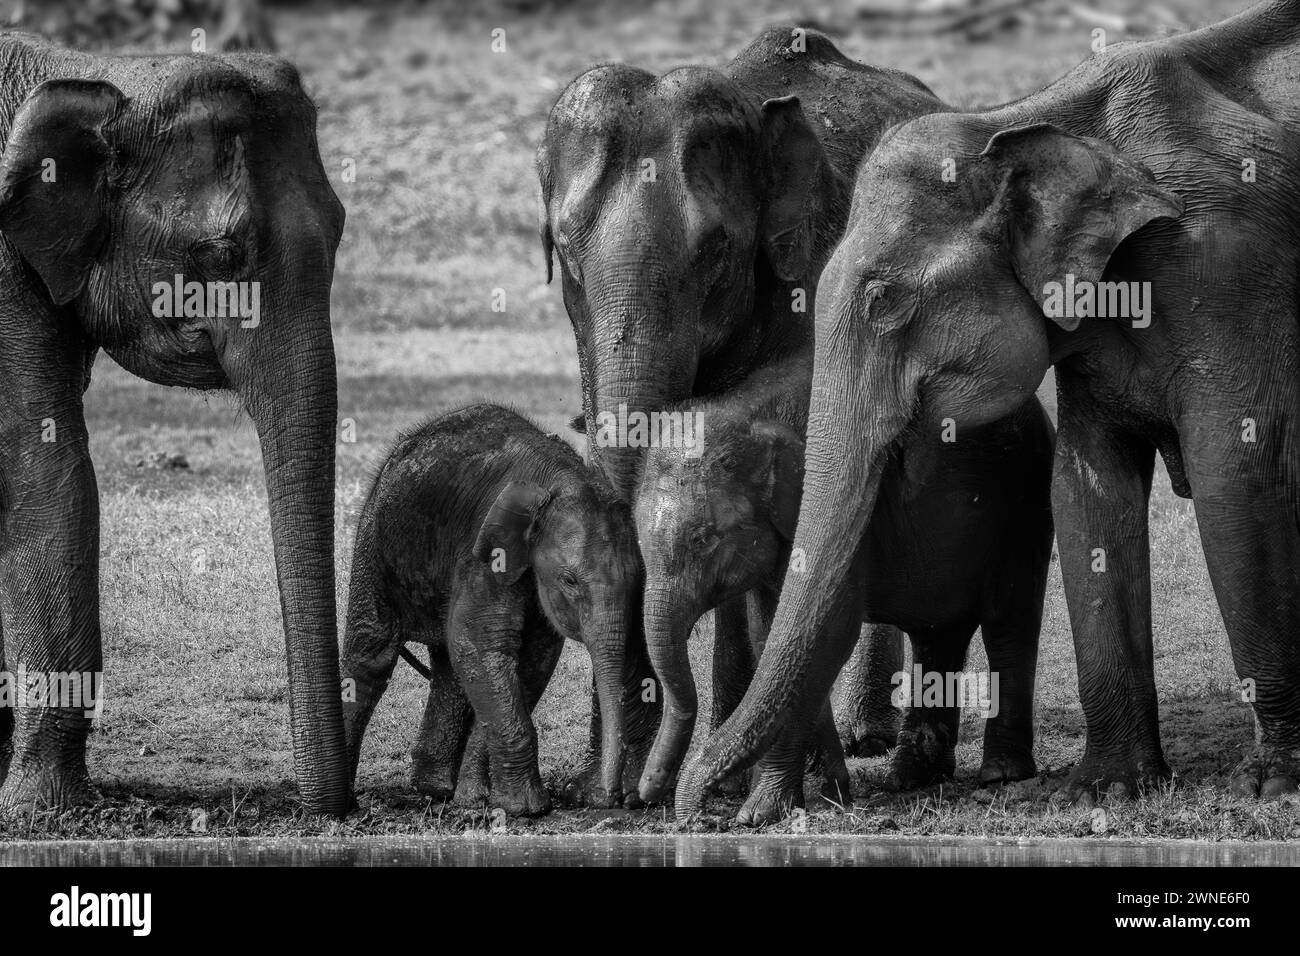 Elefante asiatico - Elephas maximus, splendido grande e iconico mammifero proveniente da foreste e boschi asiatici, riserva delle tigri di Nagarahole, India. Foto Stock